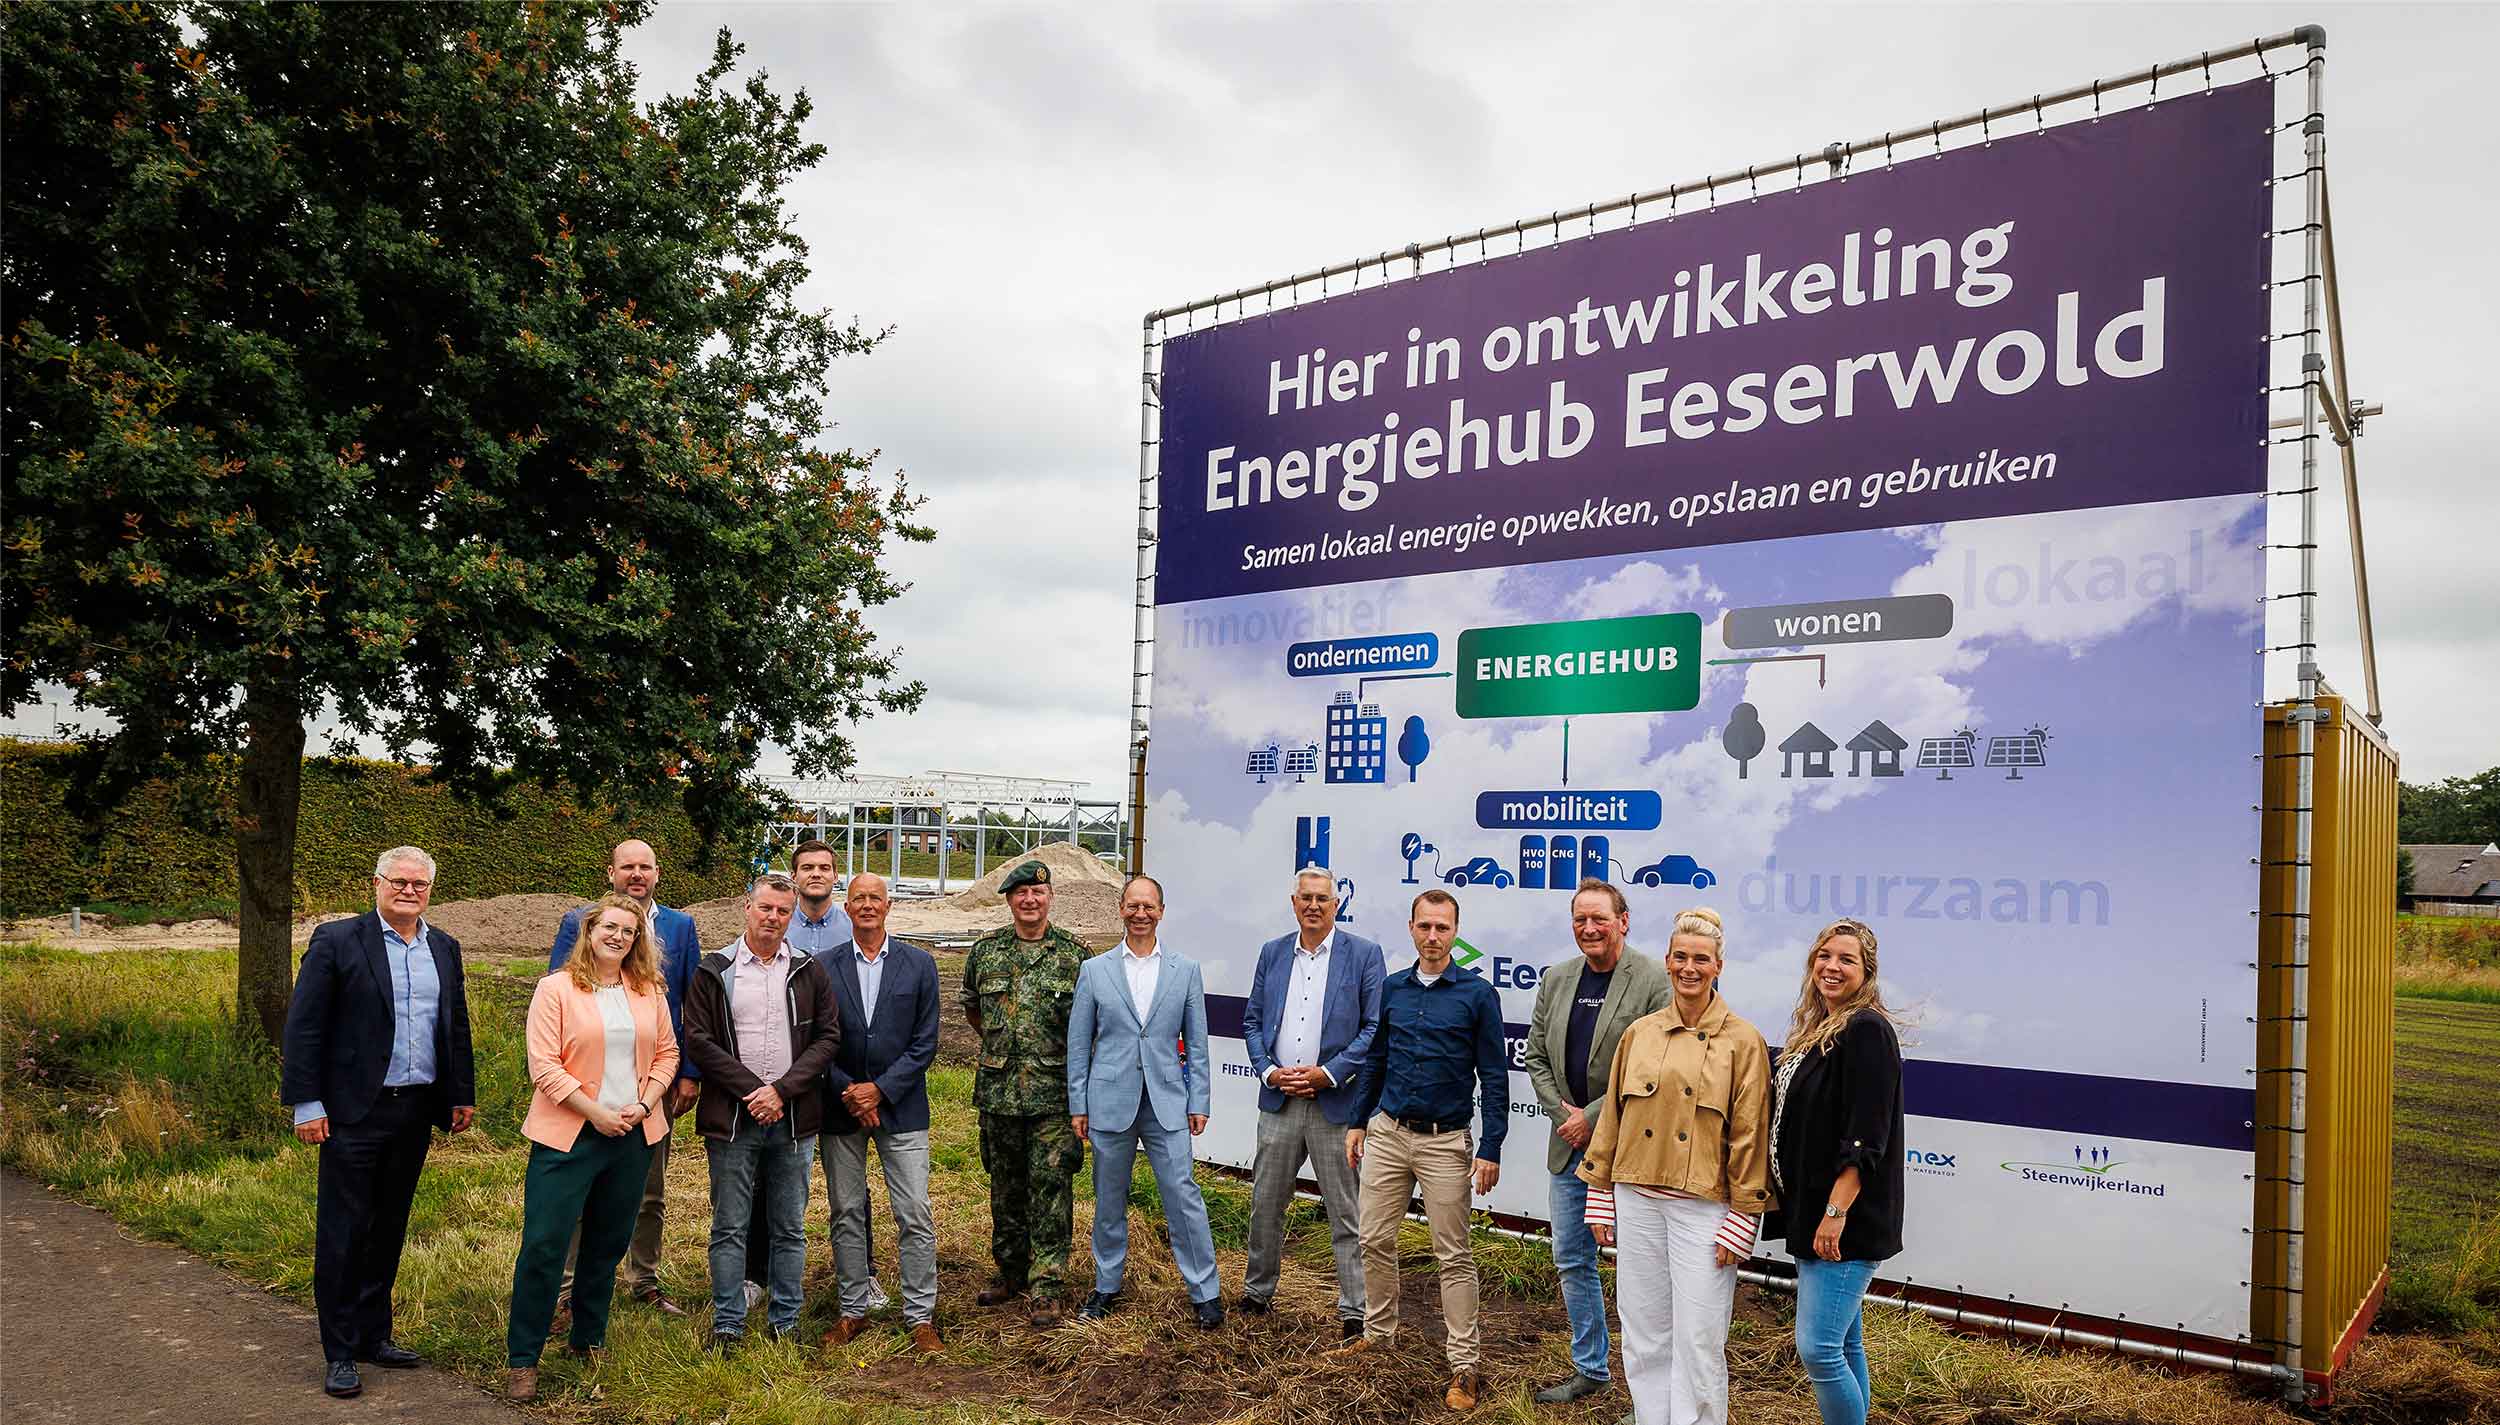 Project Energiehub Eeserwold bij Steenwijk officieel van start